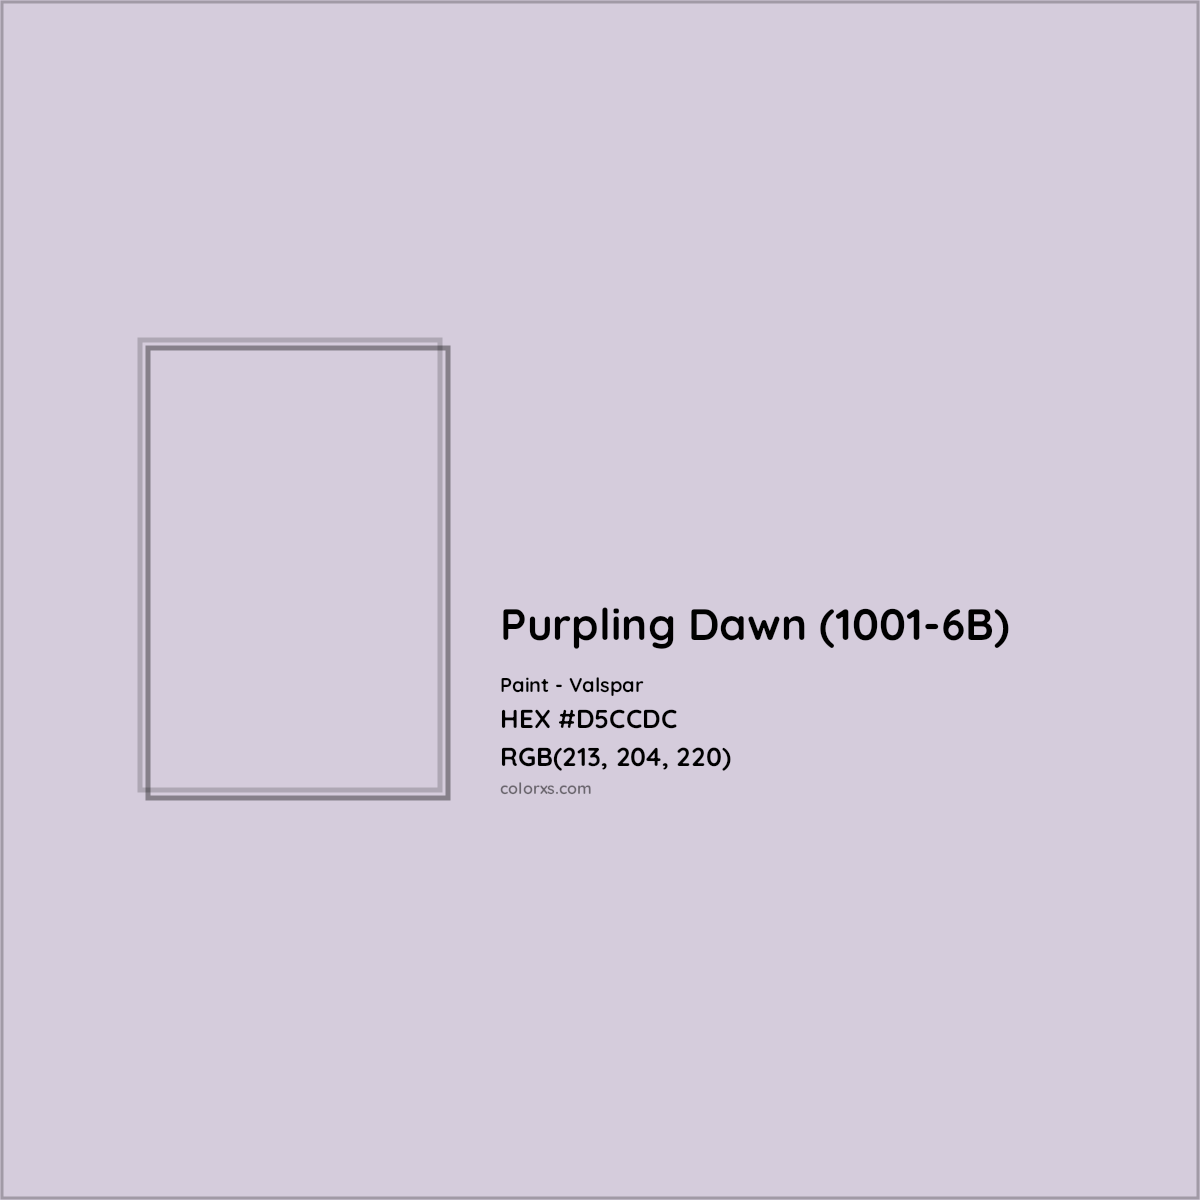 HEX #D5CCDC Purpling Dawn (1001-6B) Paint Valspar - Color Code